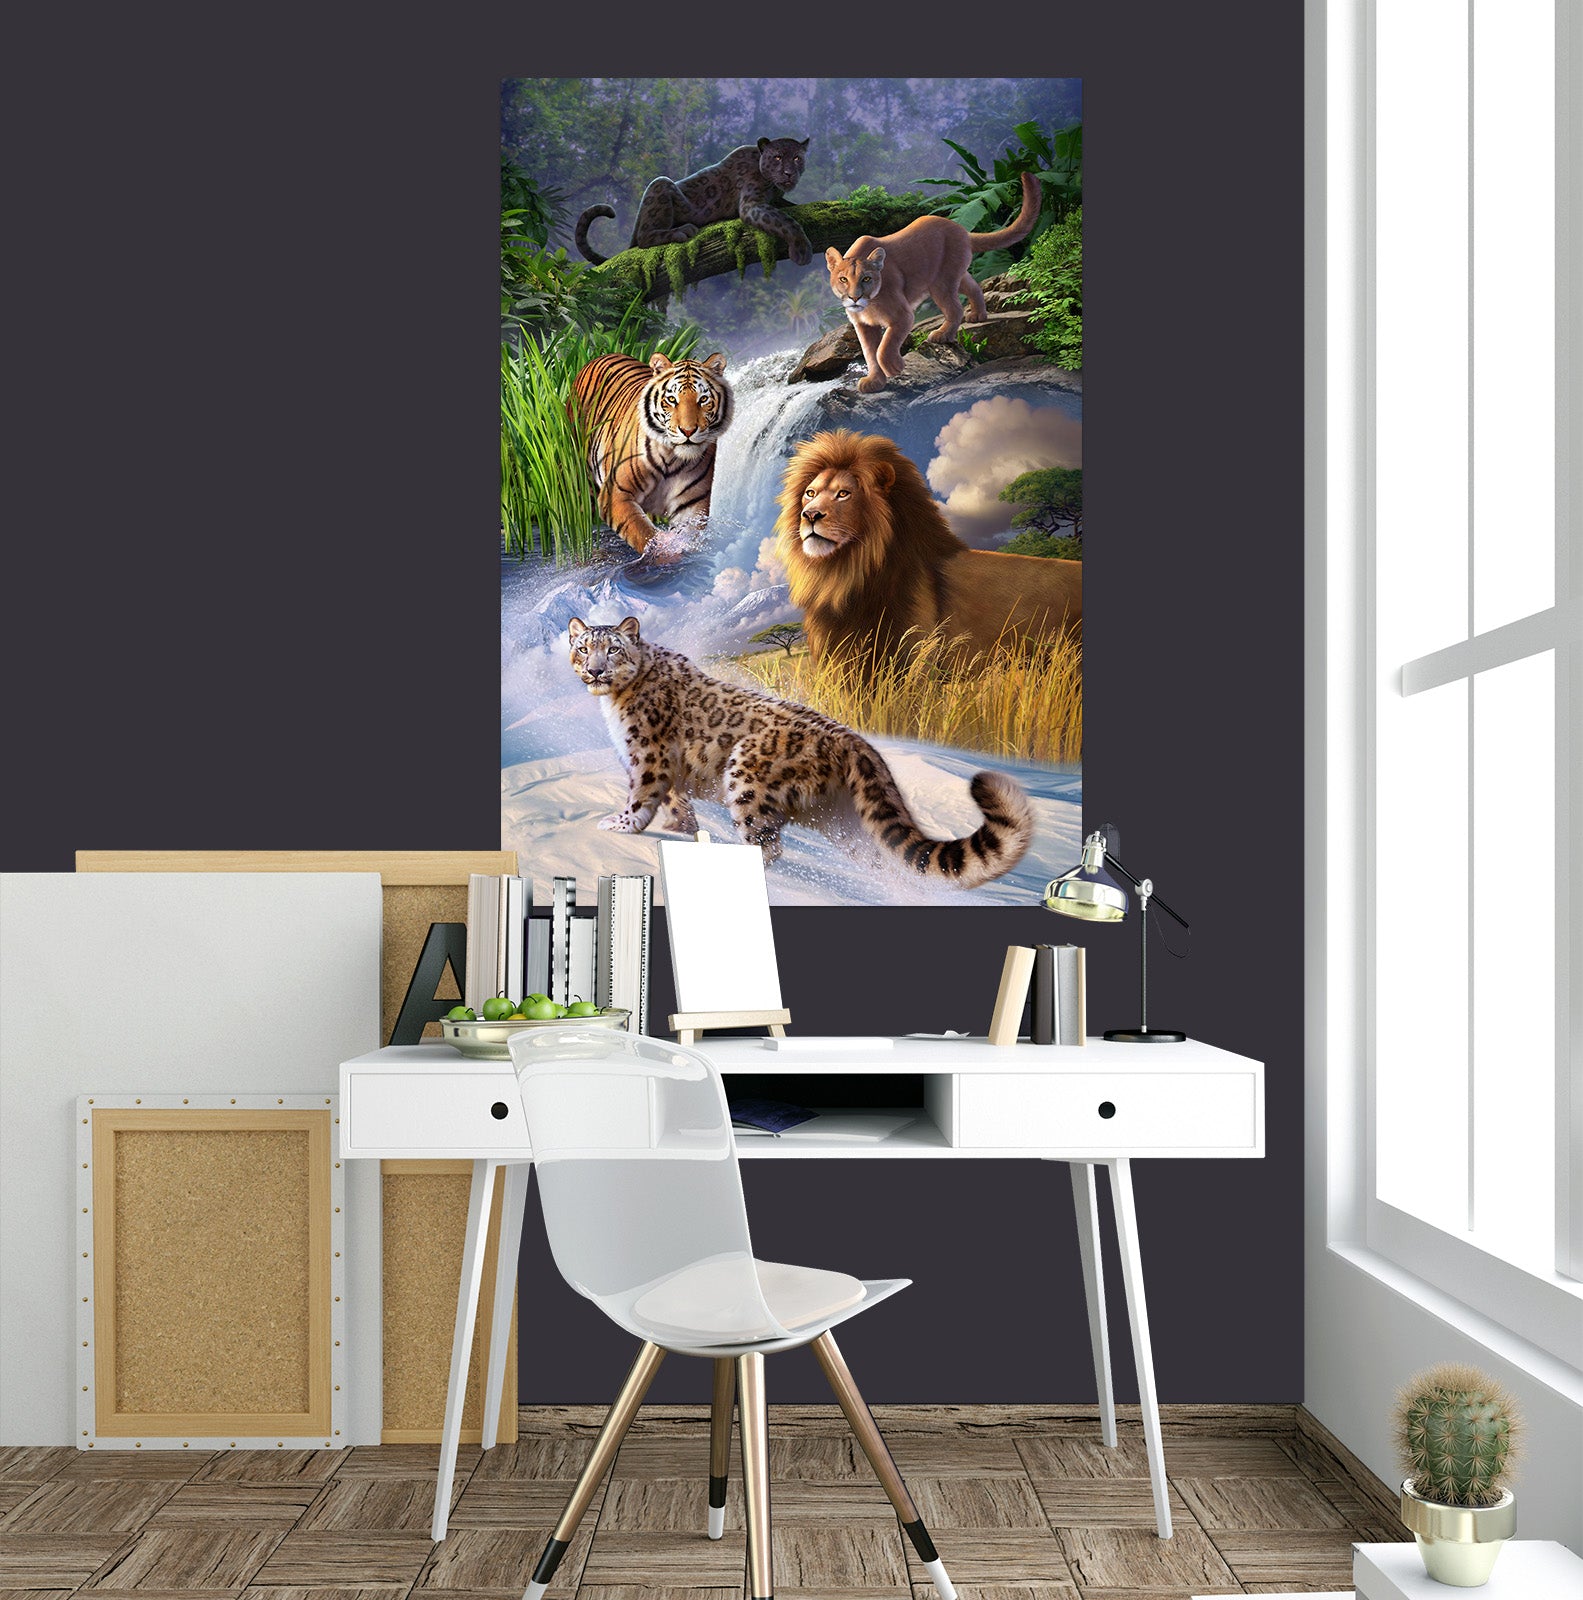 3D Tiger Lion 85195 Jerry LoFaro Wall Sticker